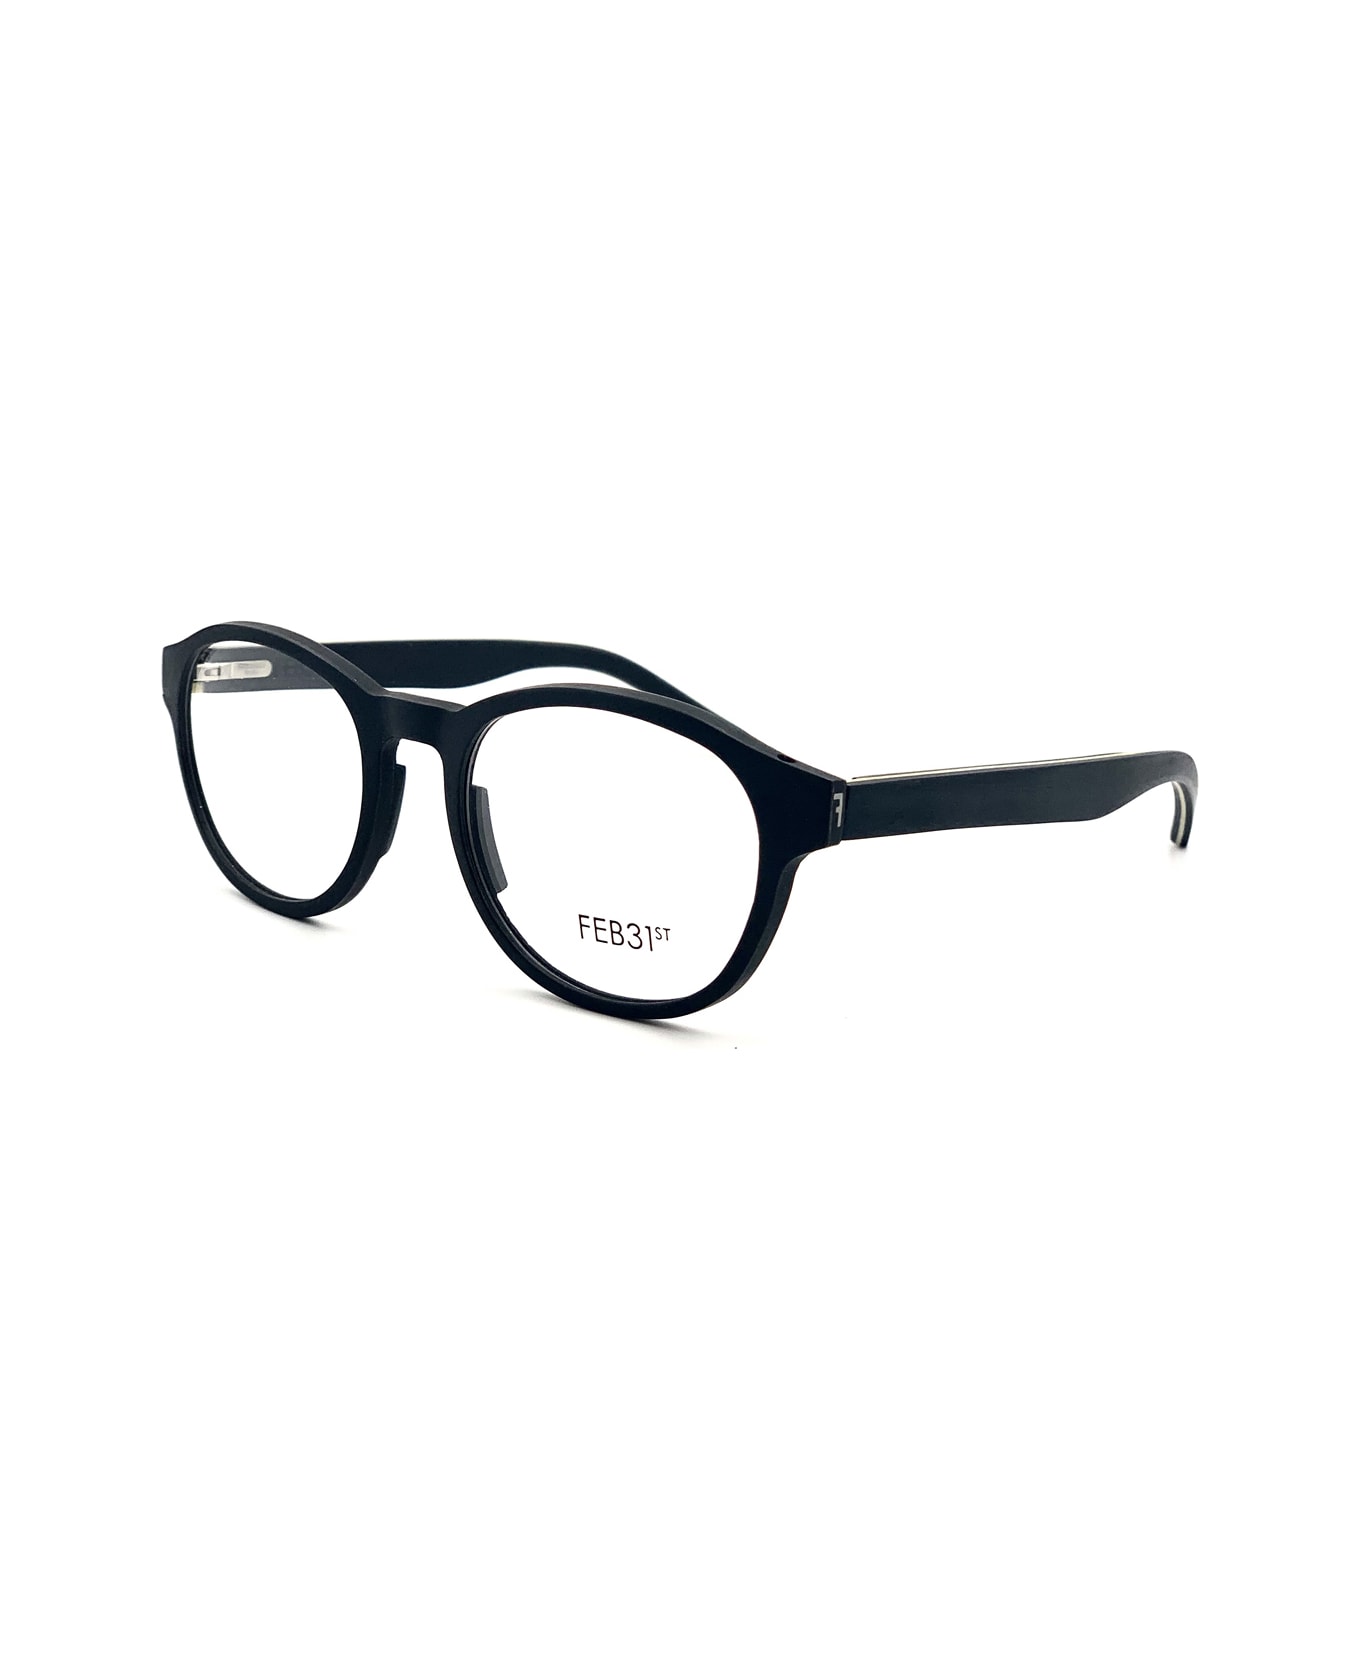 Feb31st Truman Glasses - Nero